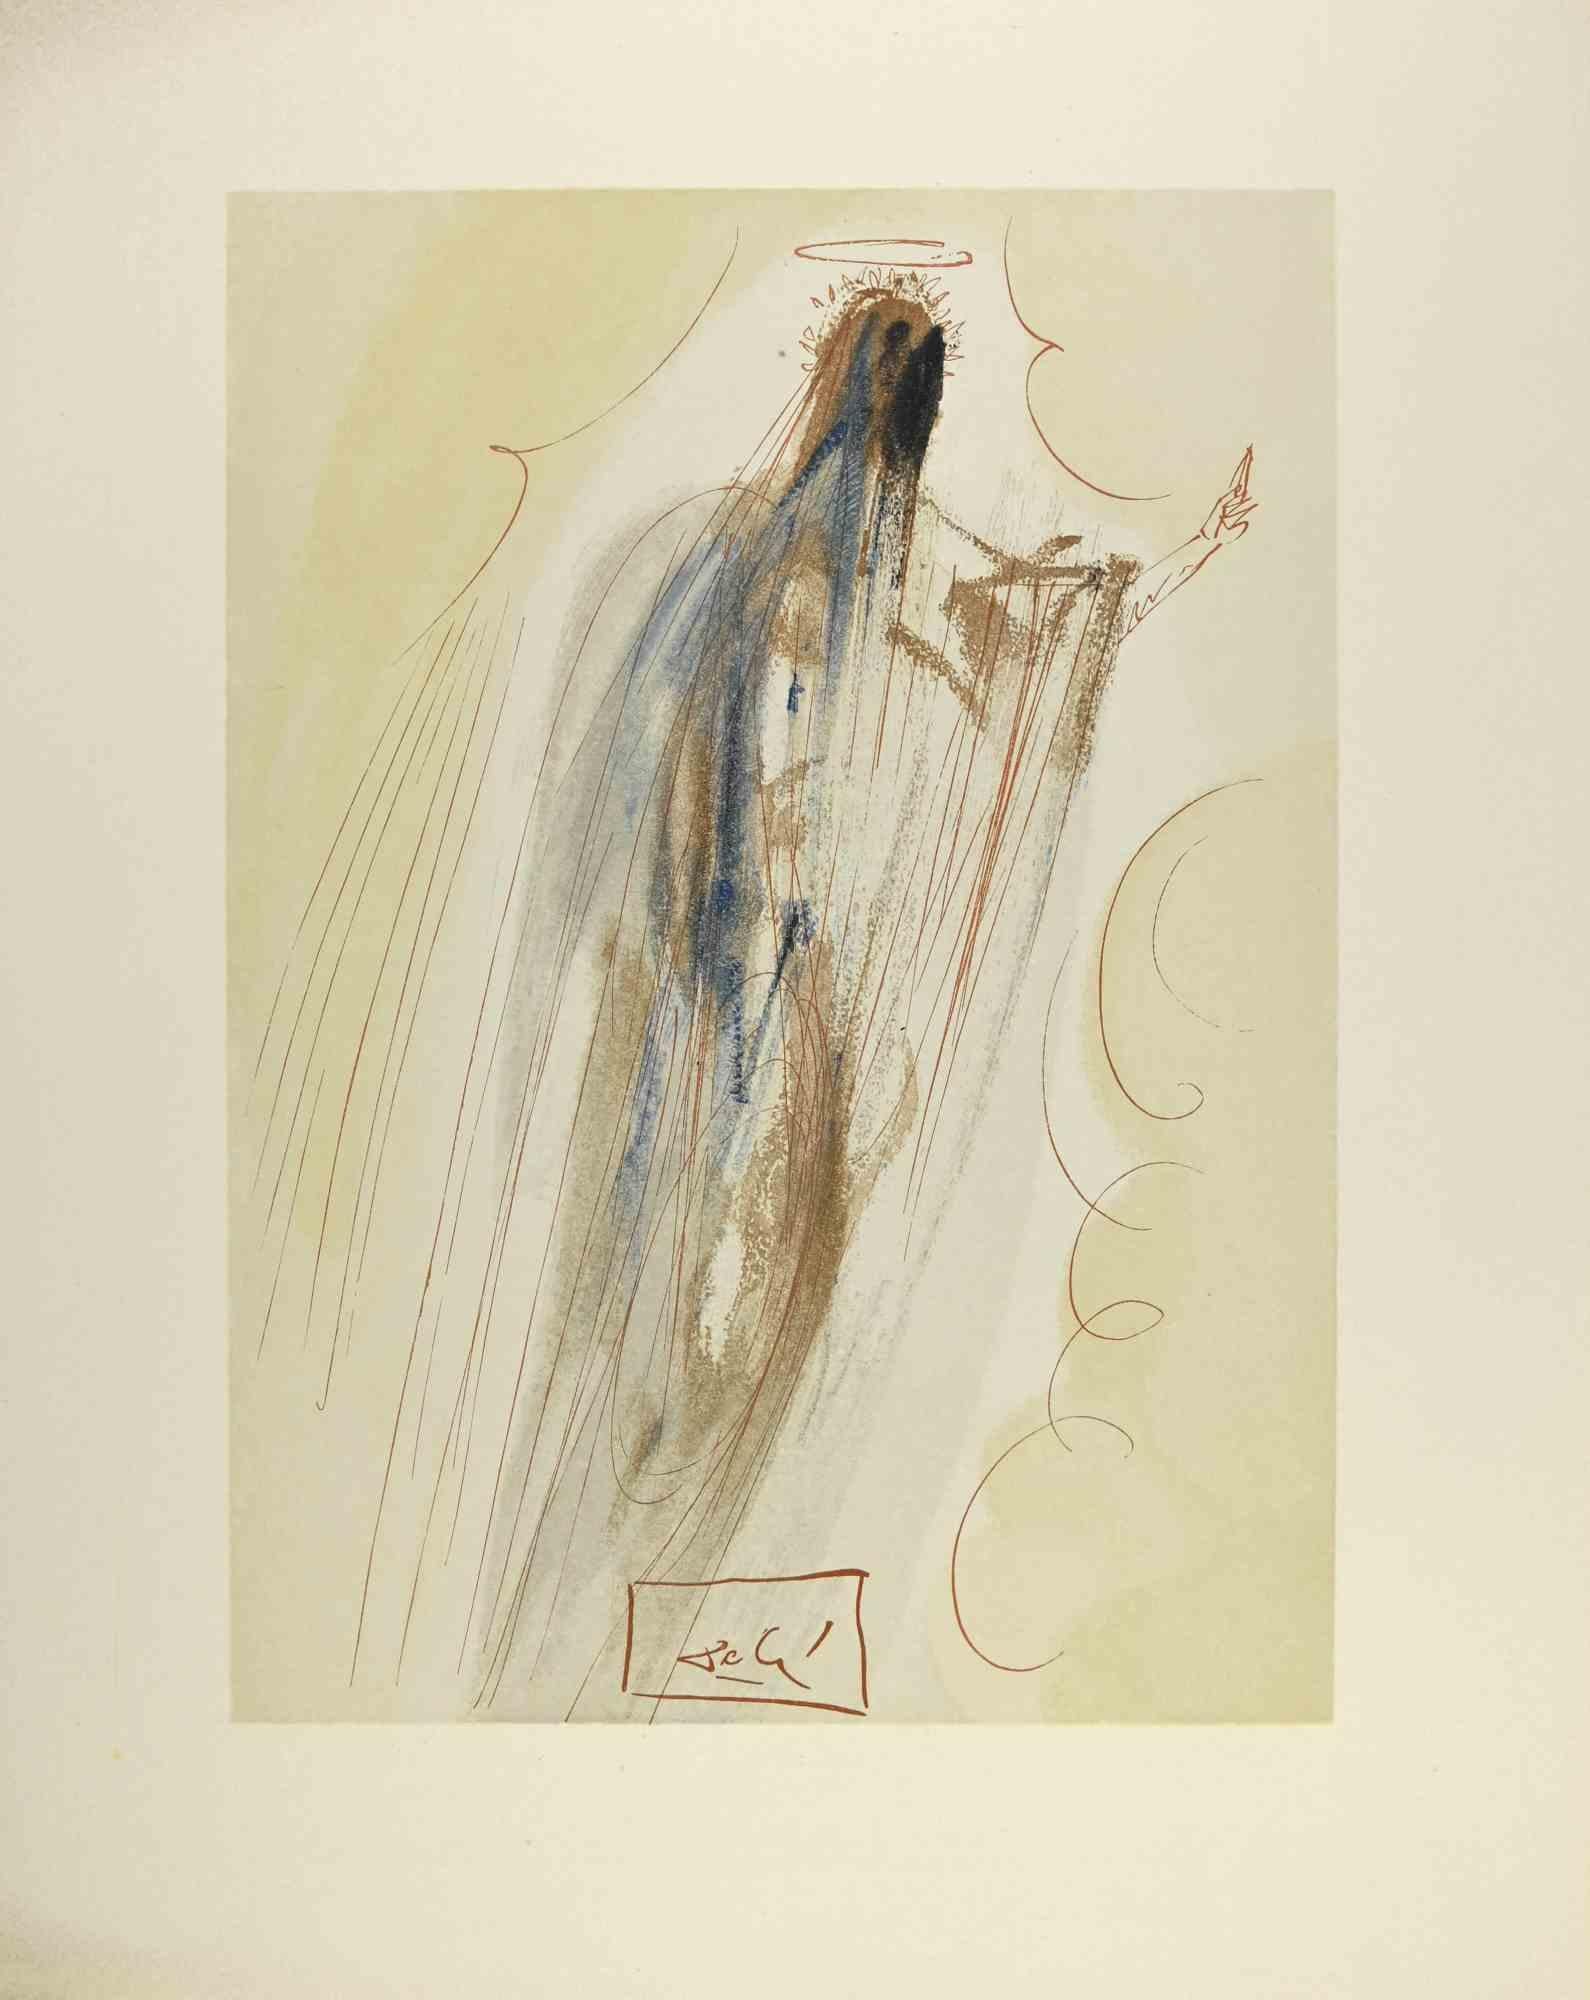 Arrival in the Empyrean - gravure sur bois - 1963